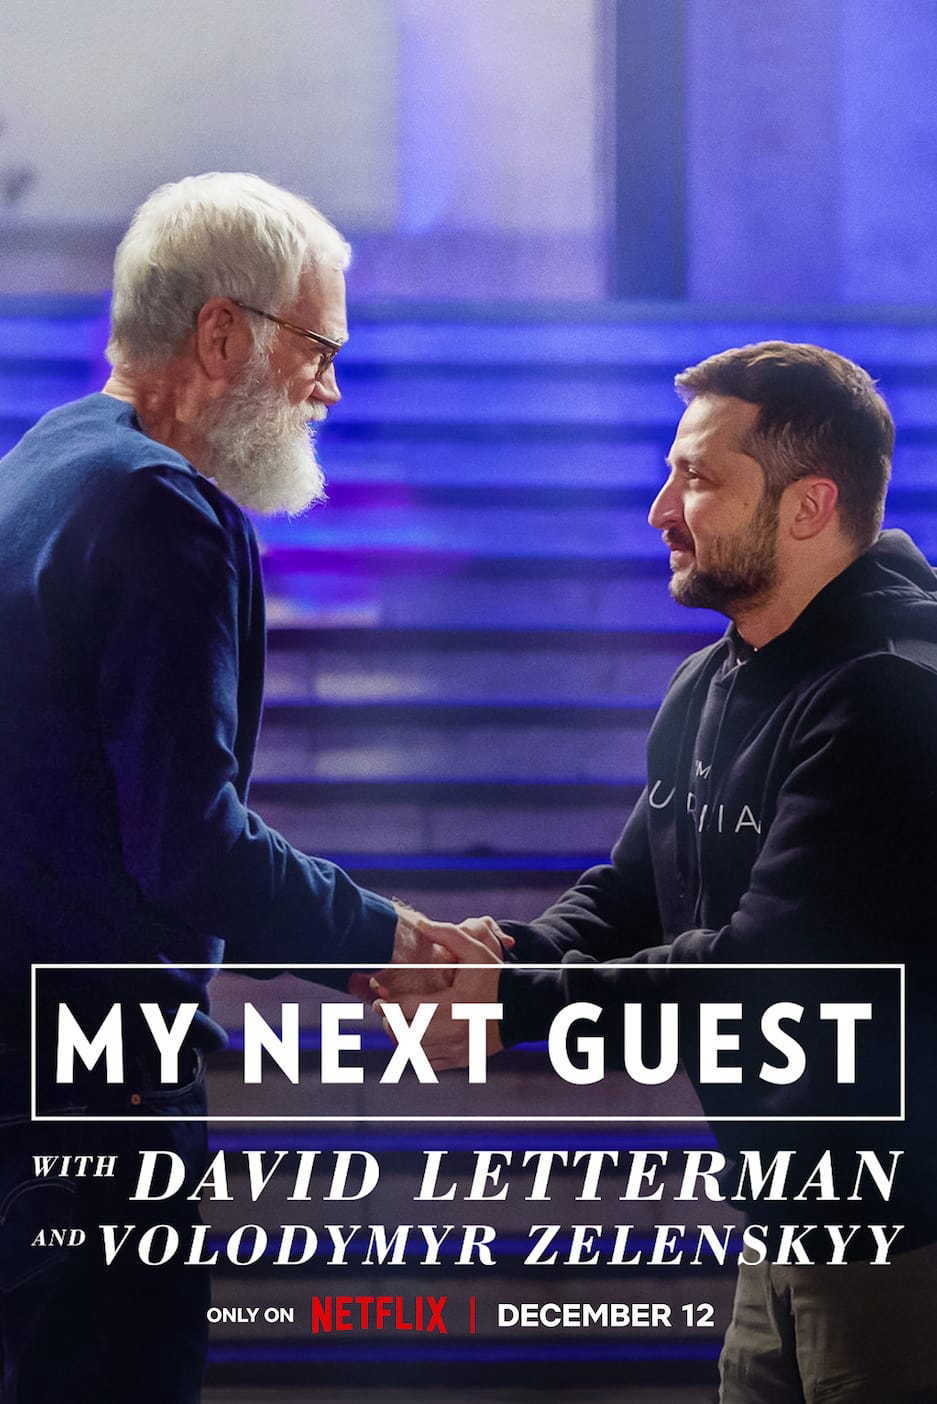 Poster Phim David Letterman: Vị khách tiếp theo là Volodymyr Zelenskyy (My Next Guest with David Letterman and Volodymyr Zelenskyy)